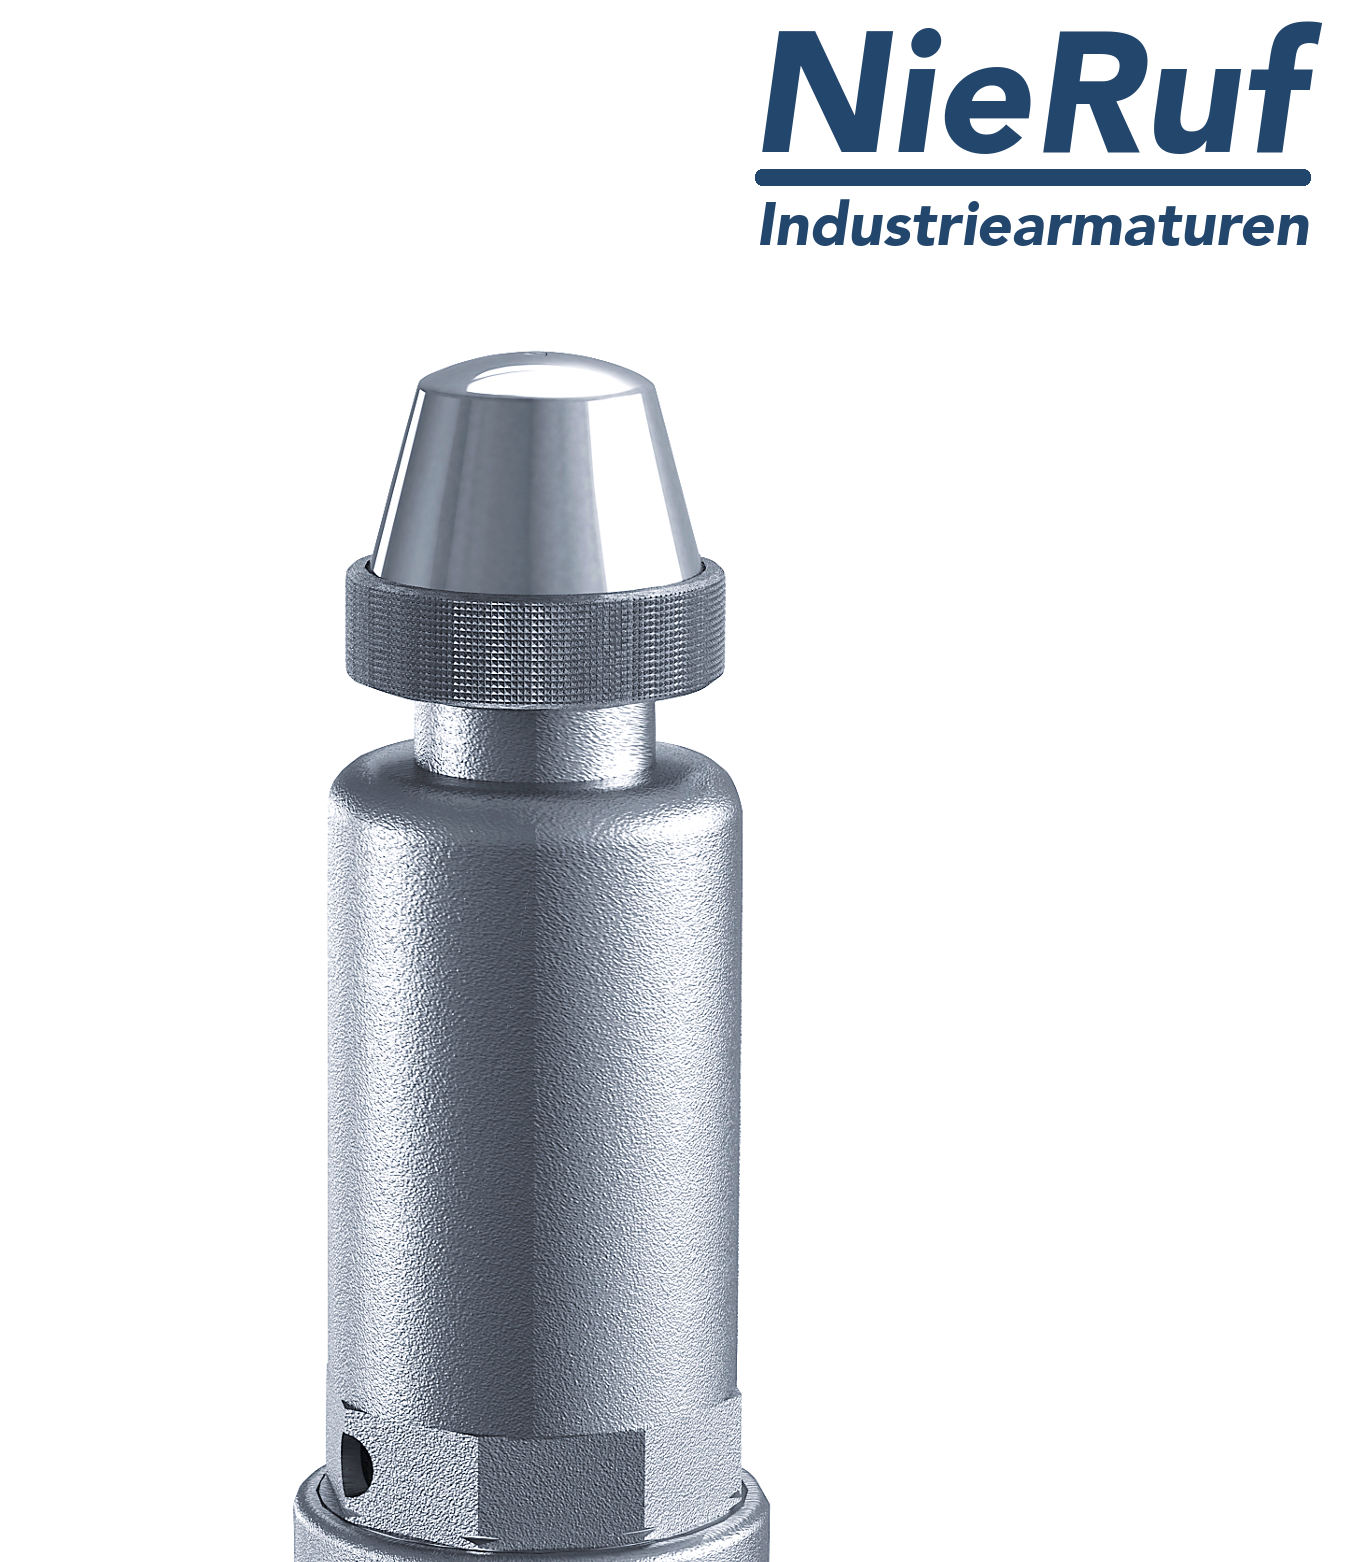 safety valve 2" x 2" fm SV05 neutral liquid media, stainless steel FKM